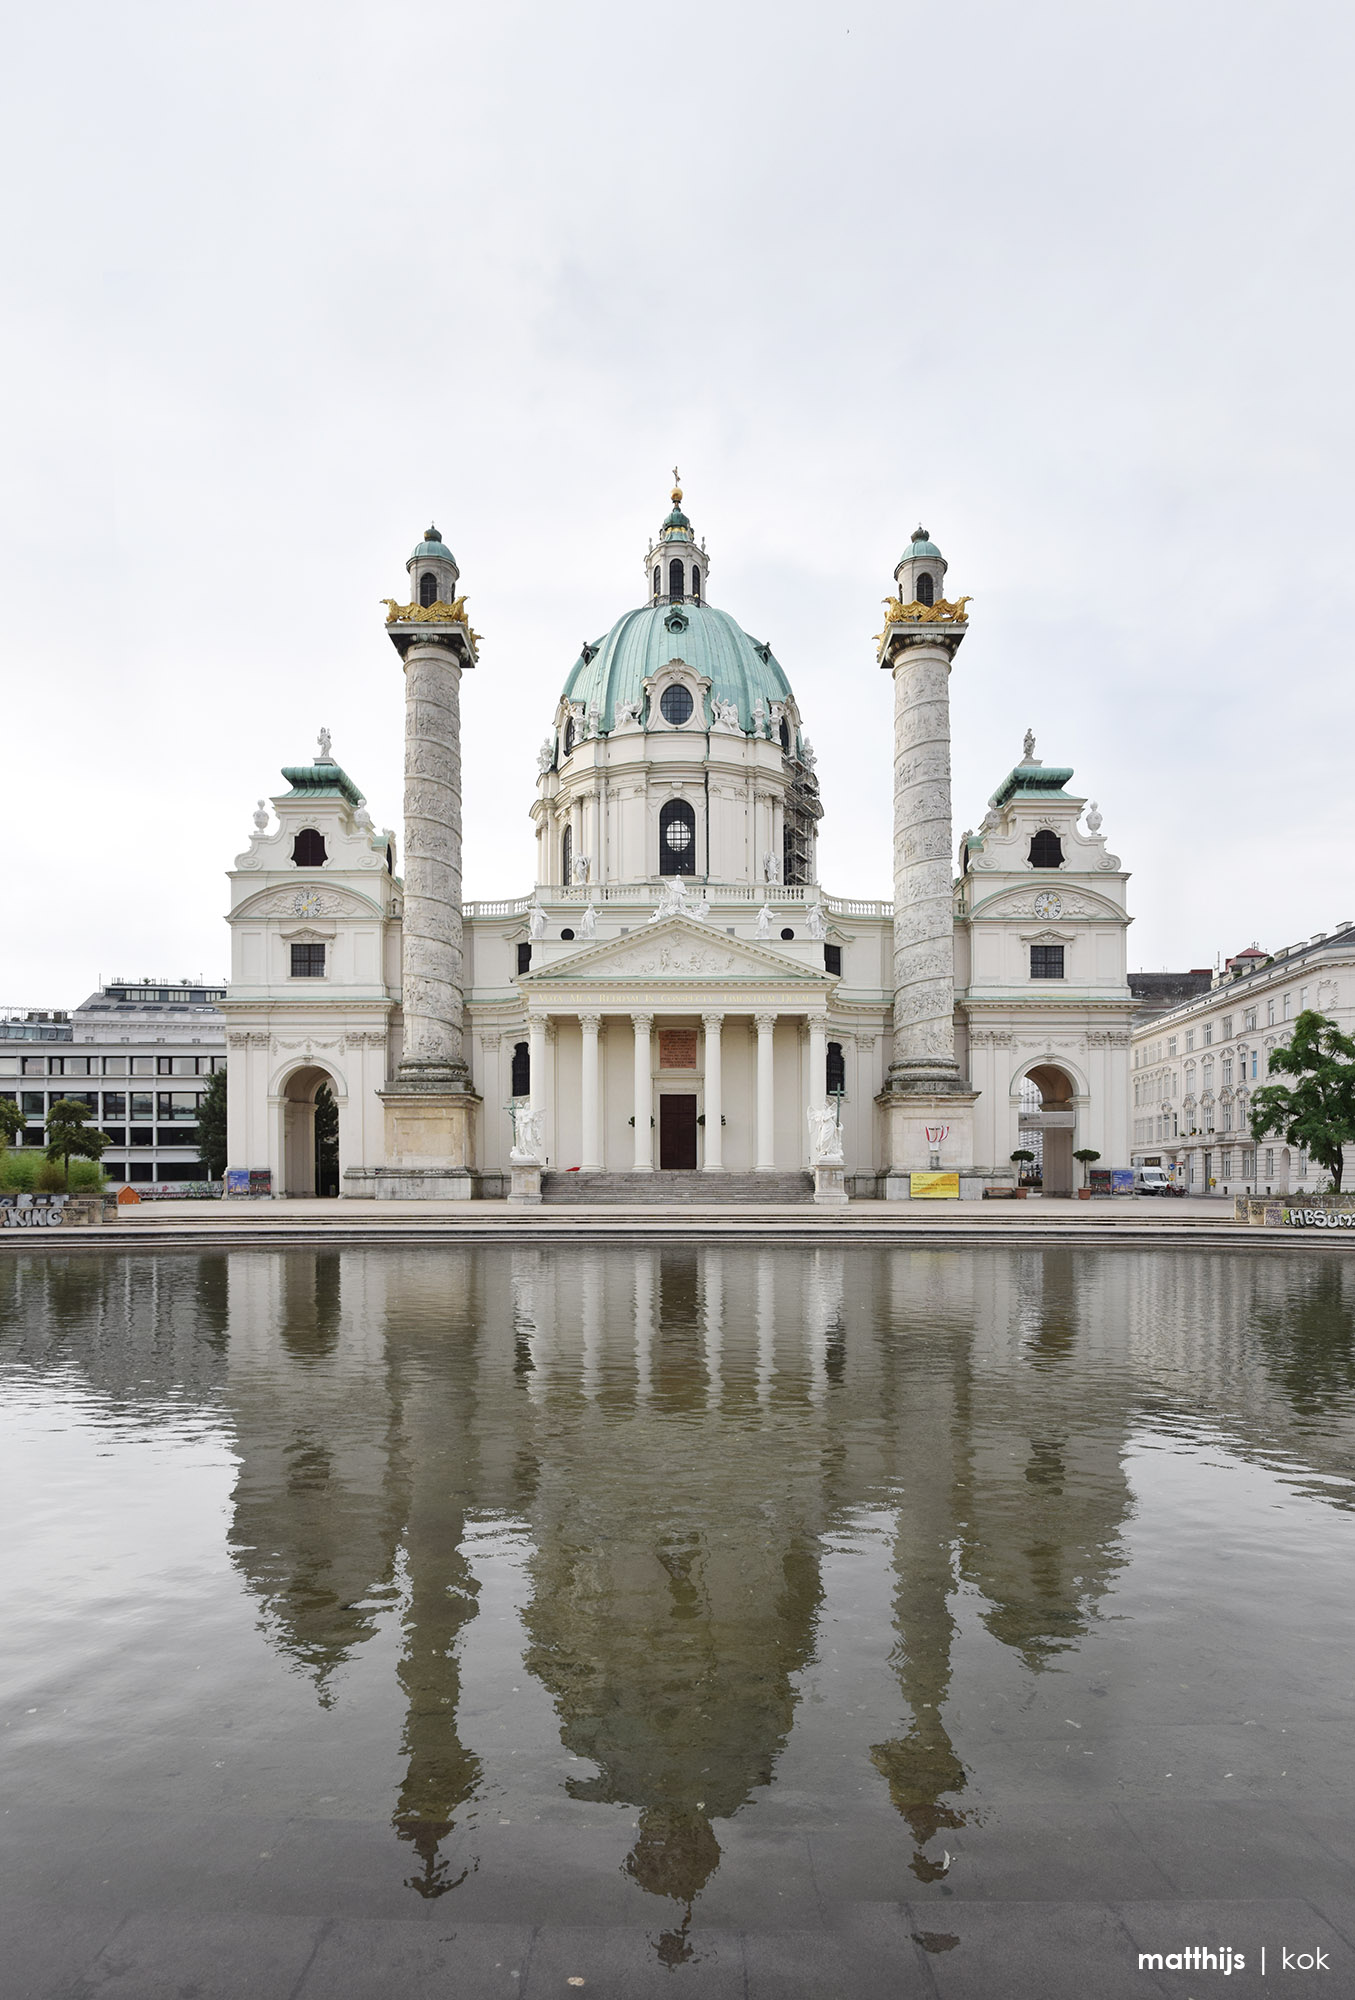 Karlskirche, Vienna, Austria | Photo by Matthijs Kok